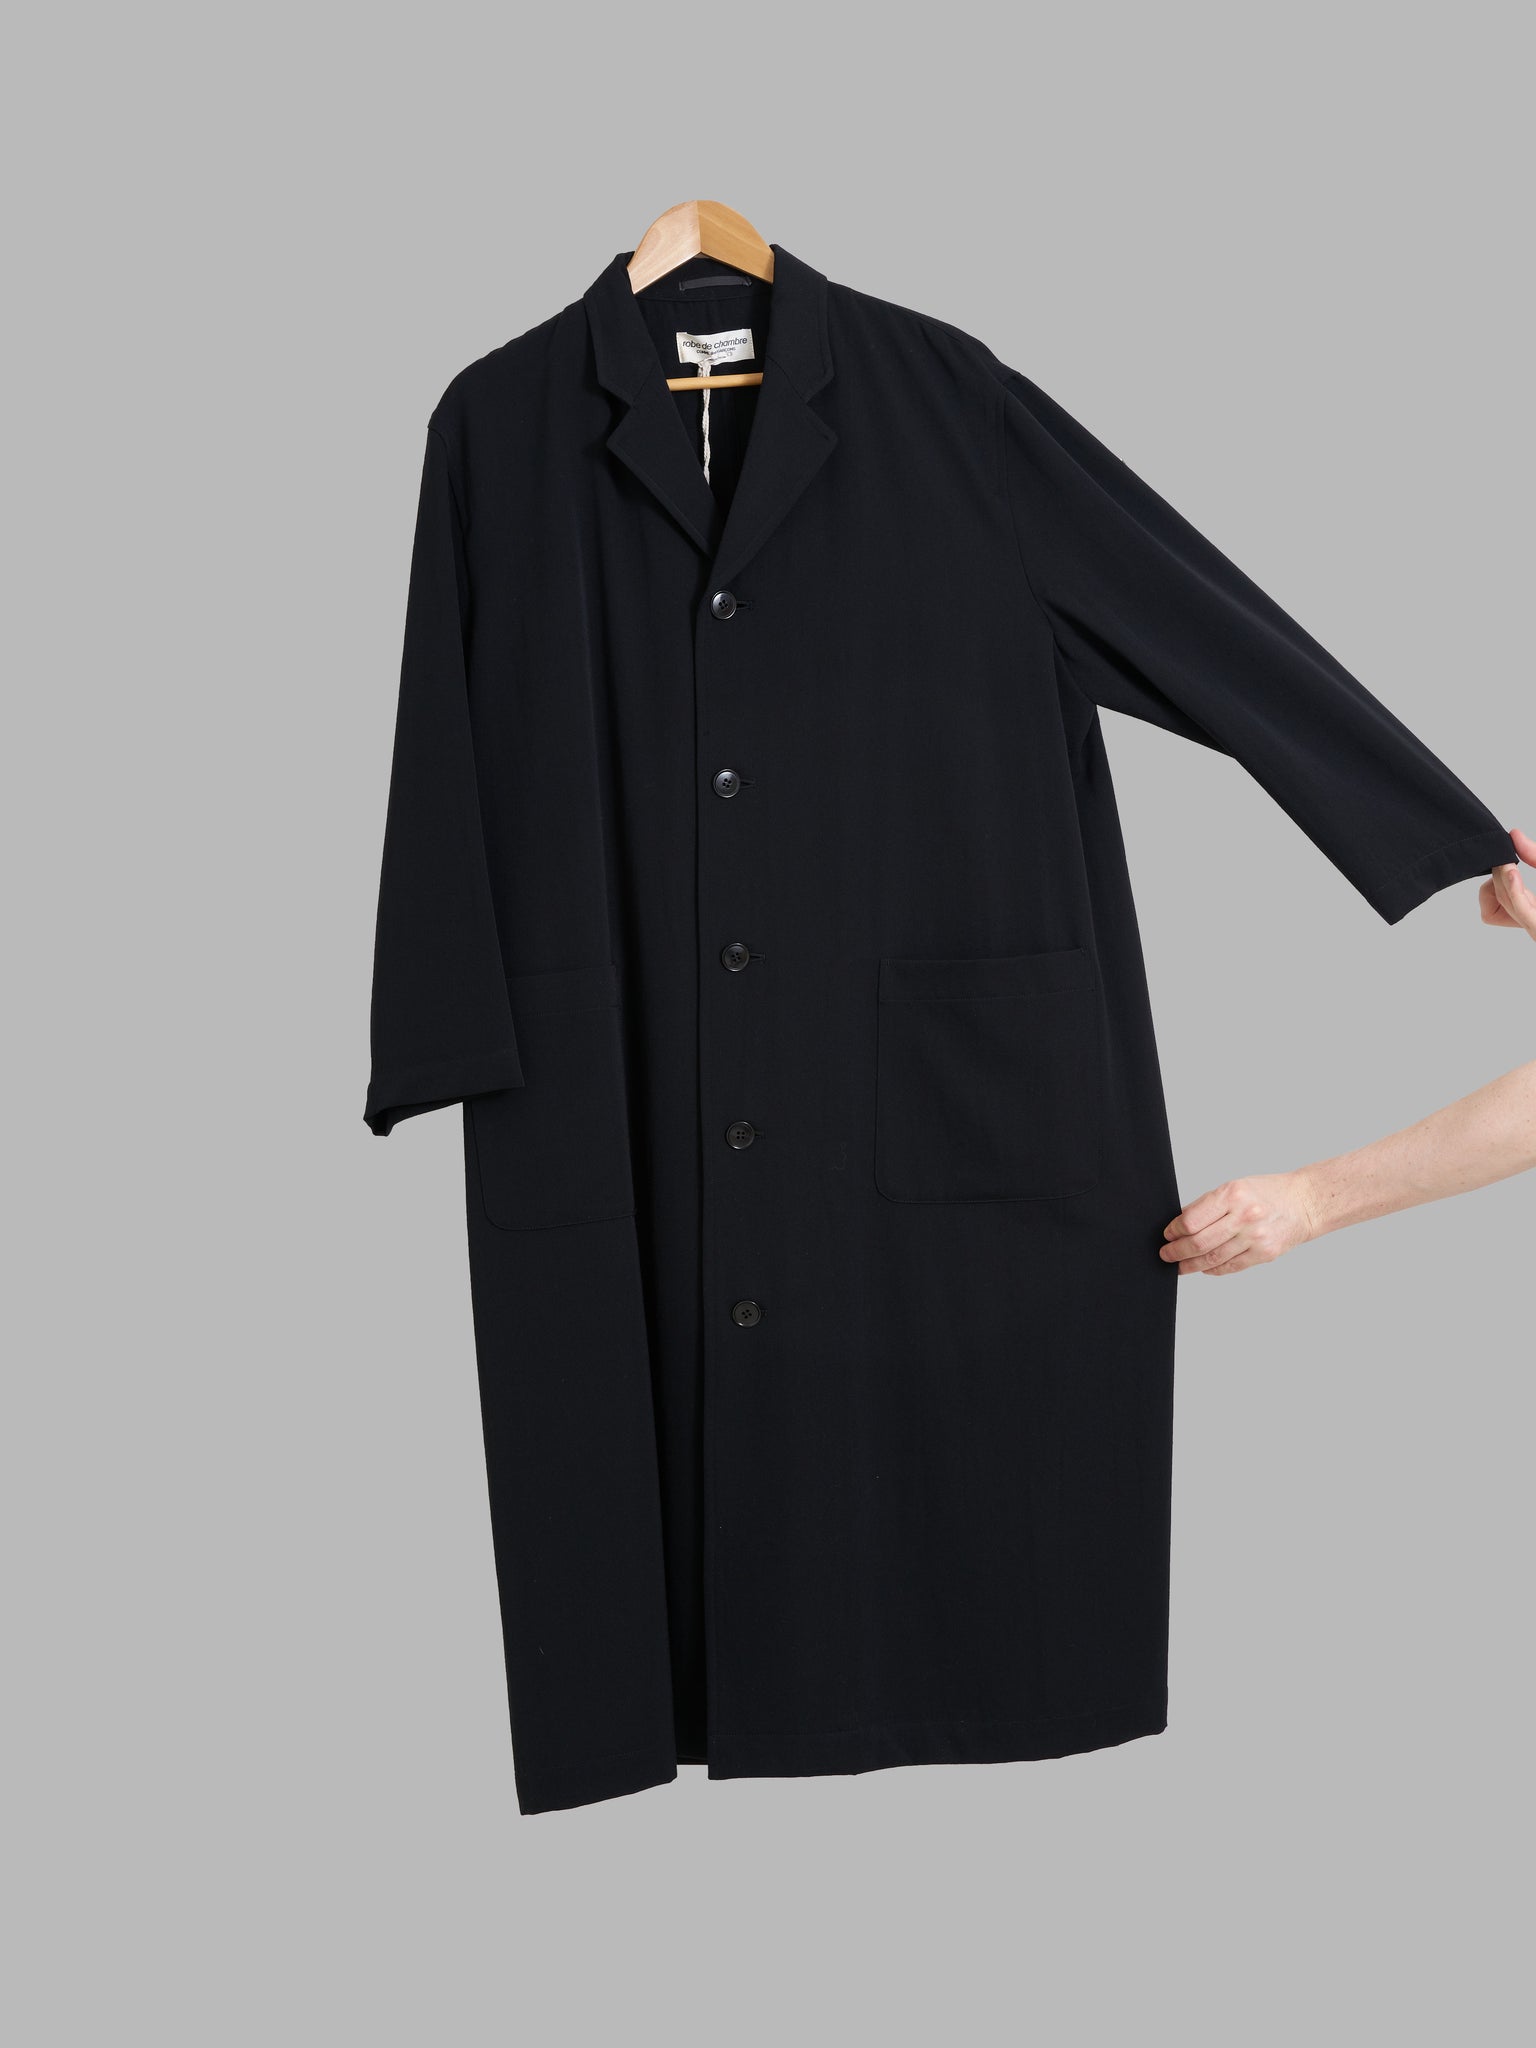 Robe de Chambre Comme des Garcons 1980s black wool full length coat - sz S M L